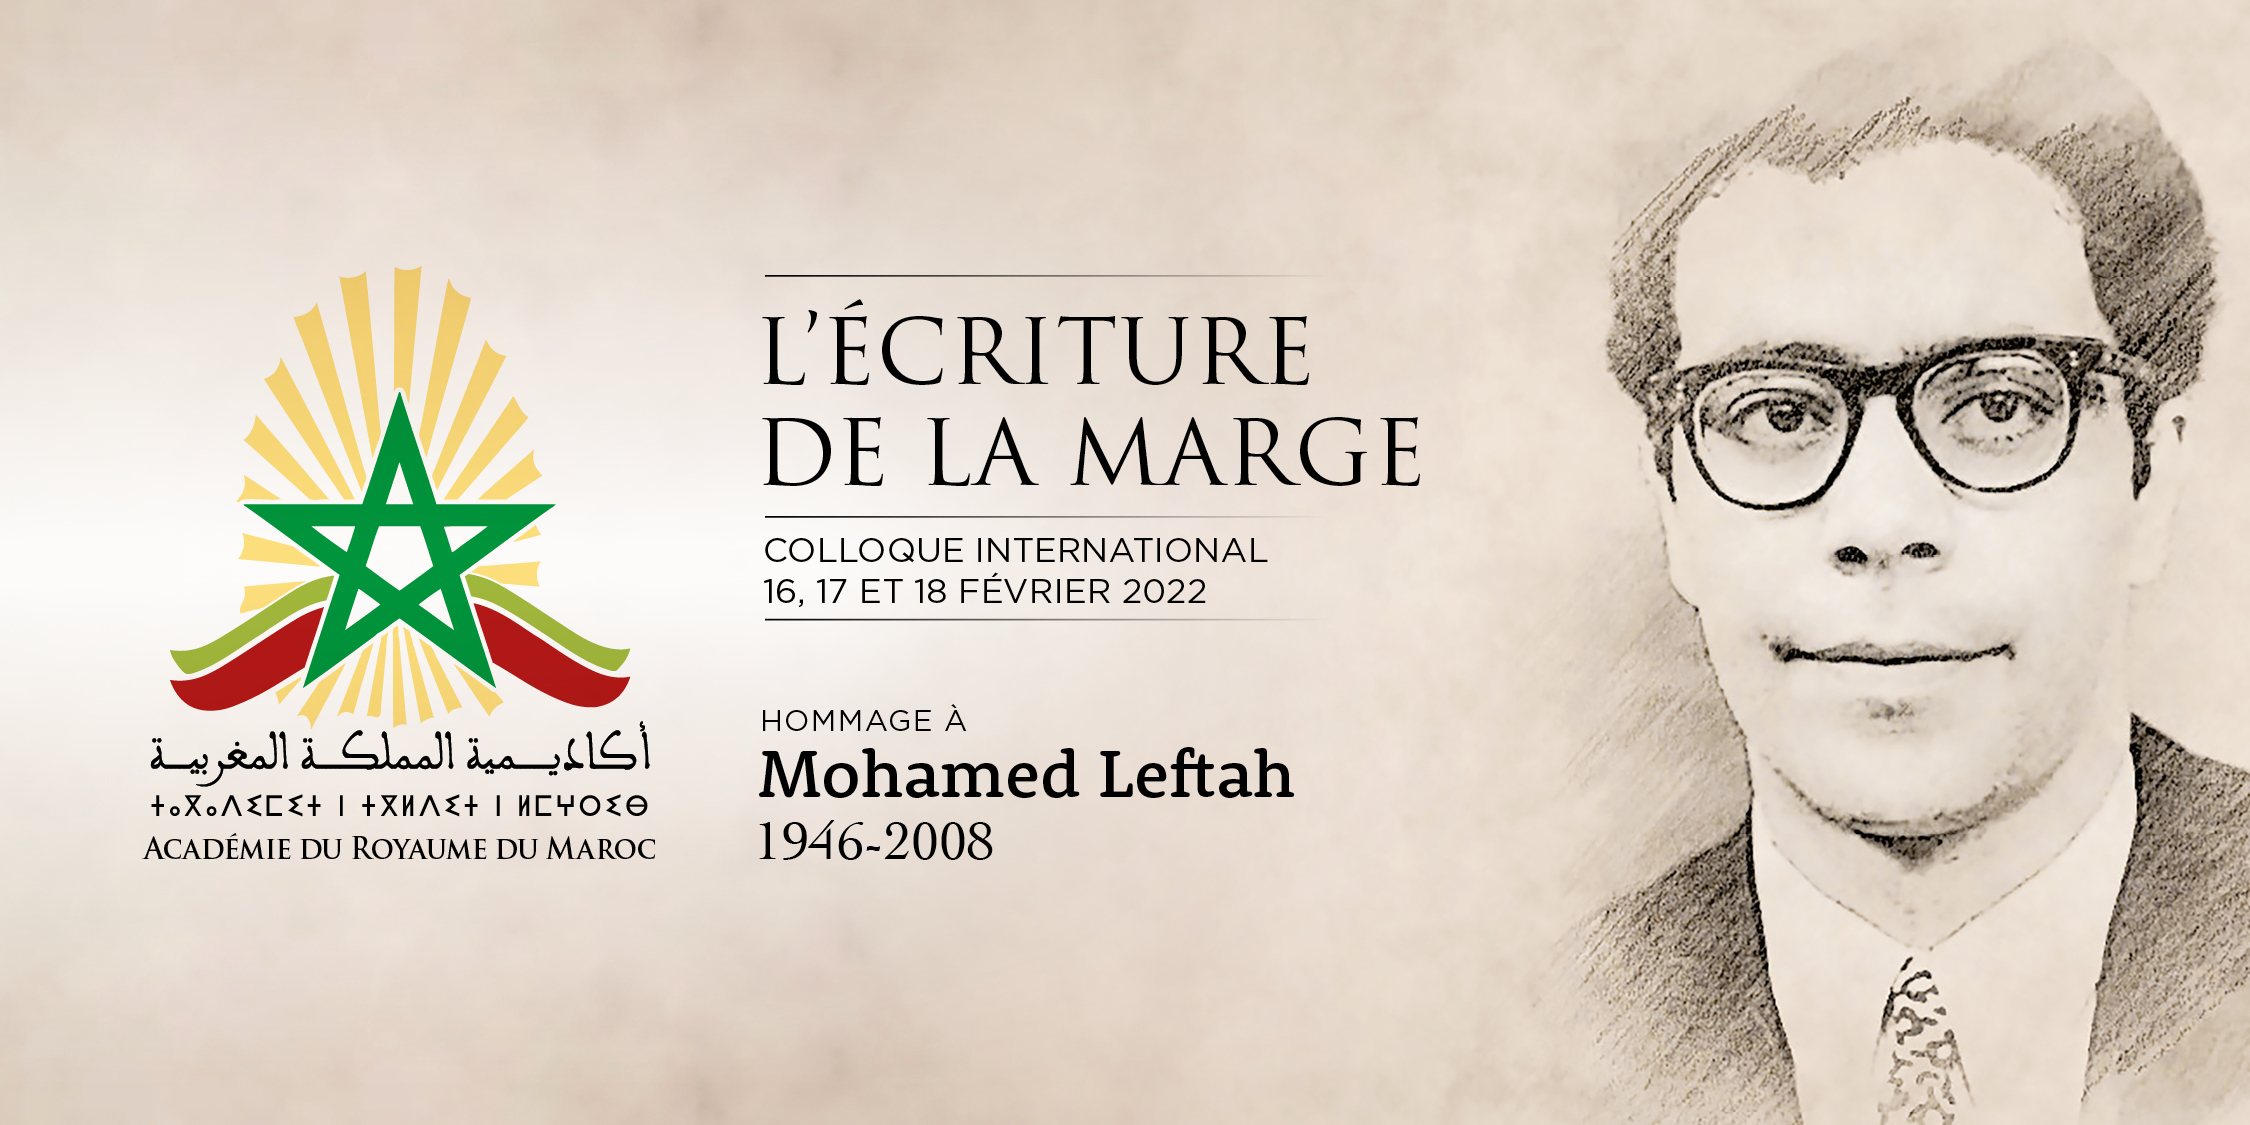 L’ECRITURE DE LA MARGE, Hommage à Mohamed Leftah (2008 – 1946)